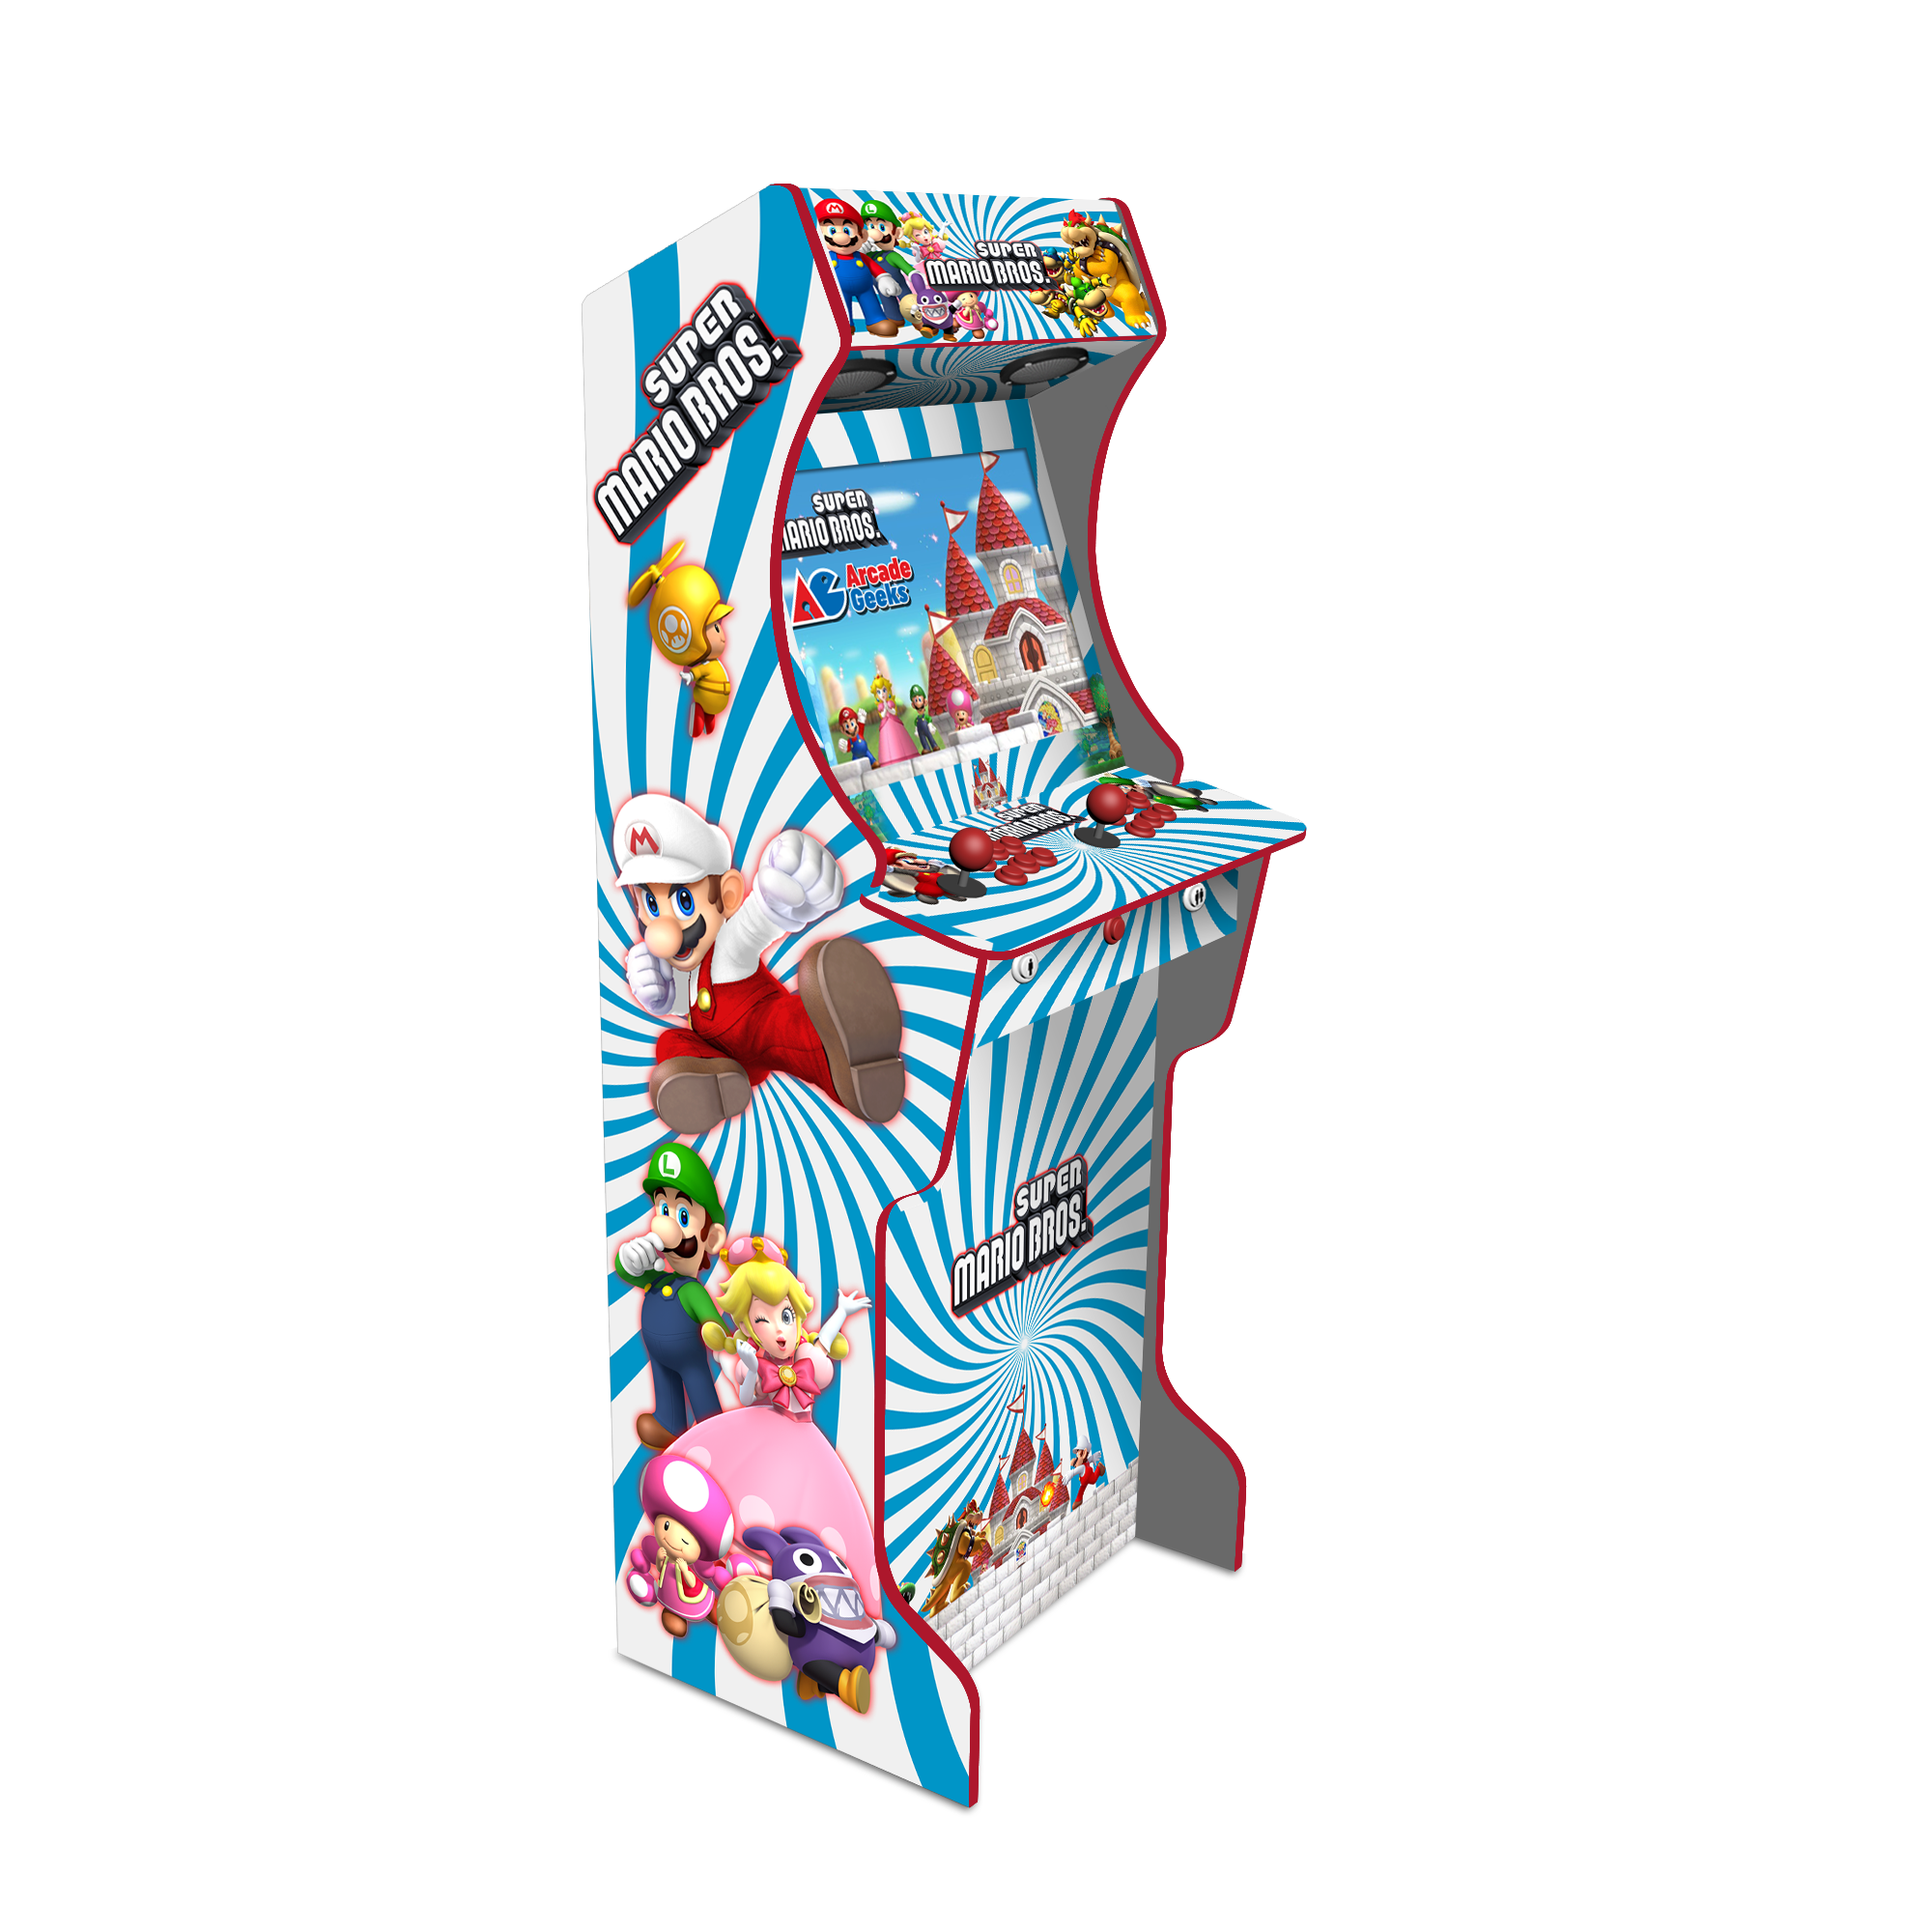 AG Elite 2 Player Arcade Machine - Super Mario Bros - Top Spec